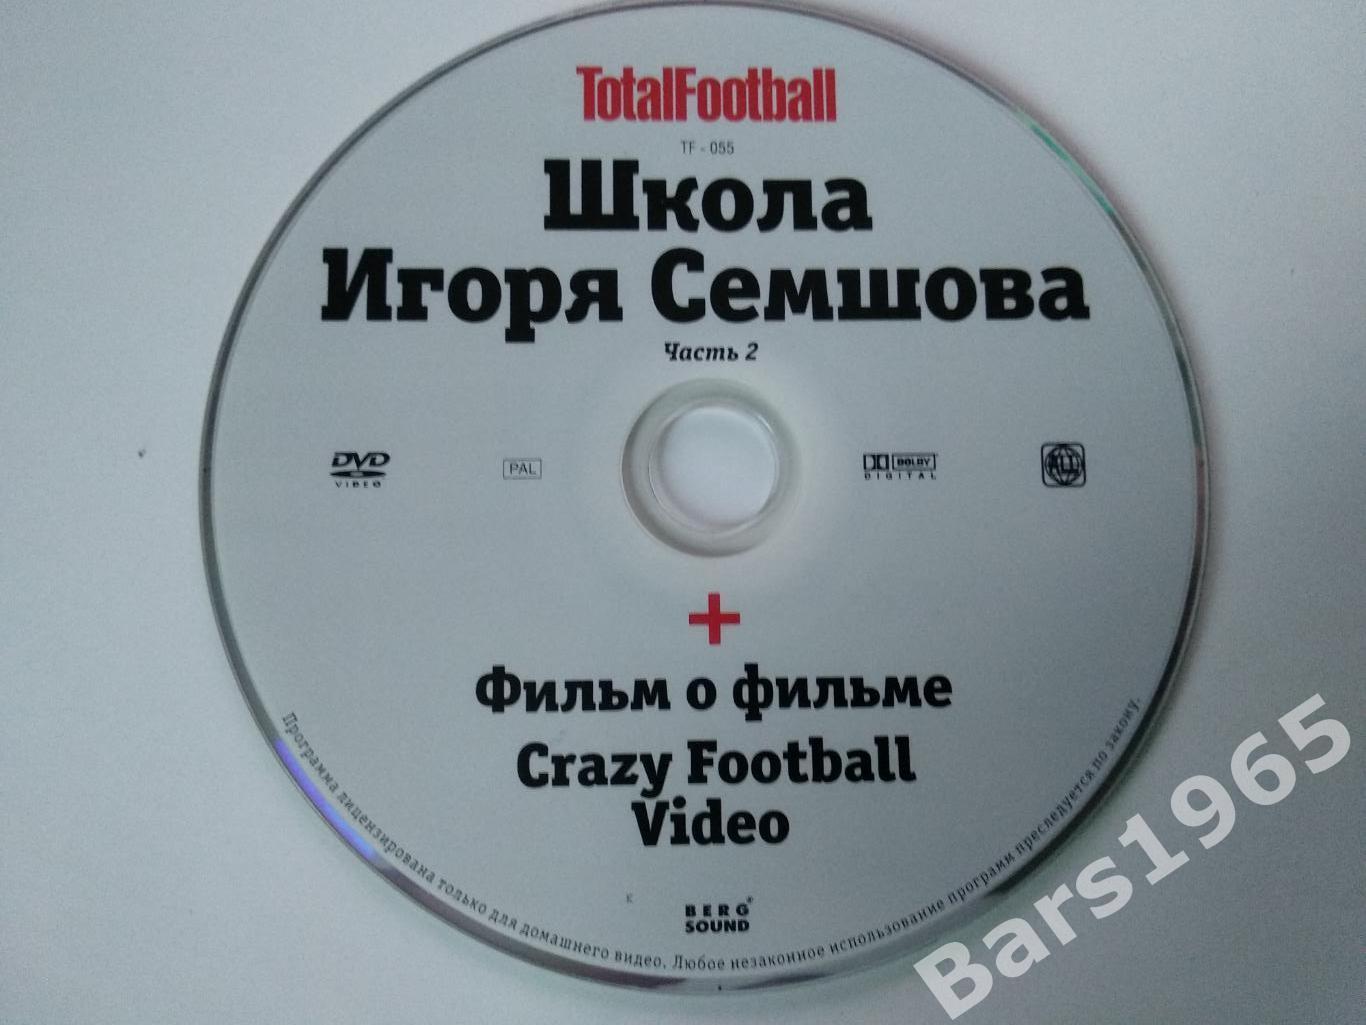 Школа Игоря Семшова часть 2 + Crazy Football Video DVD Total Football